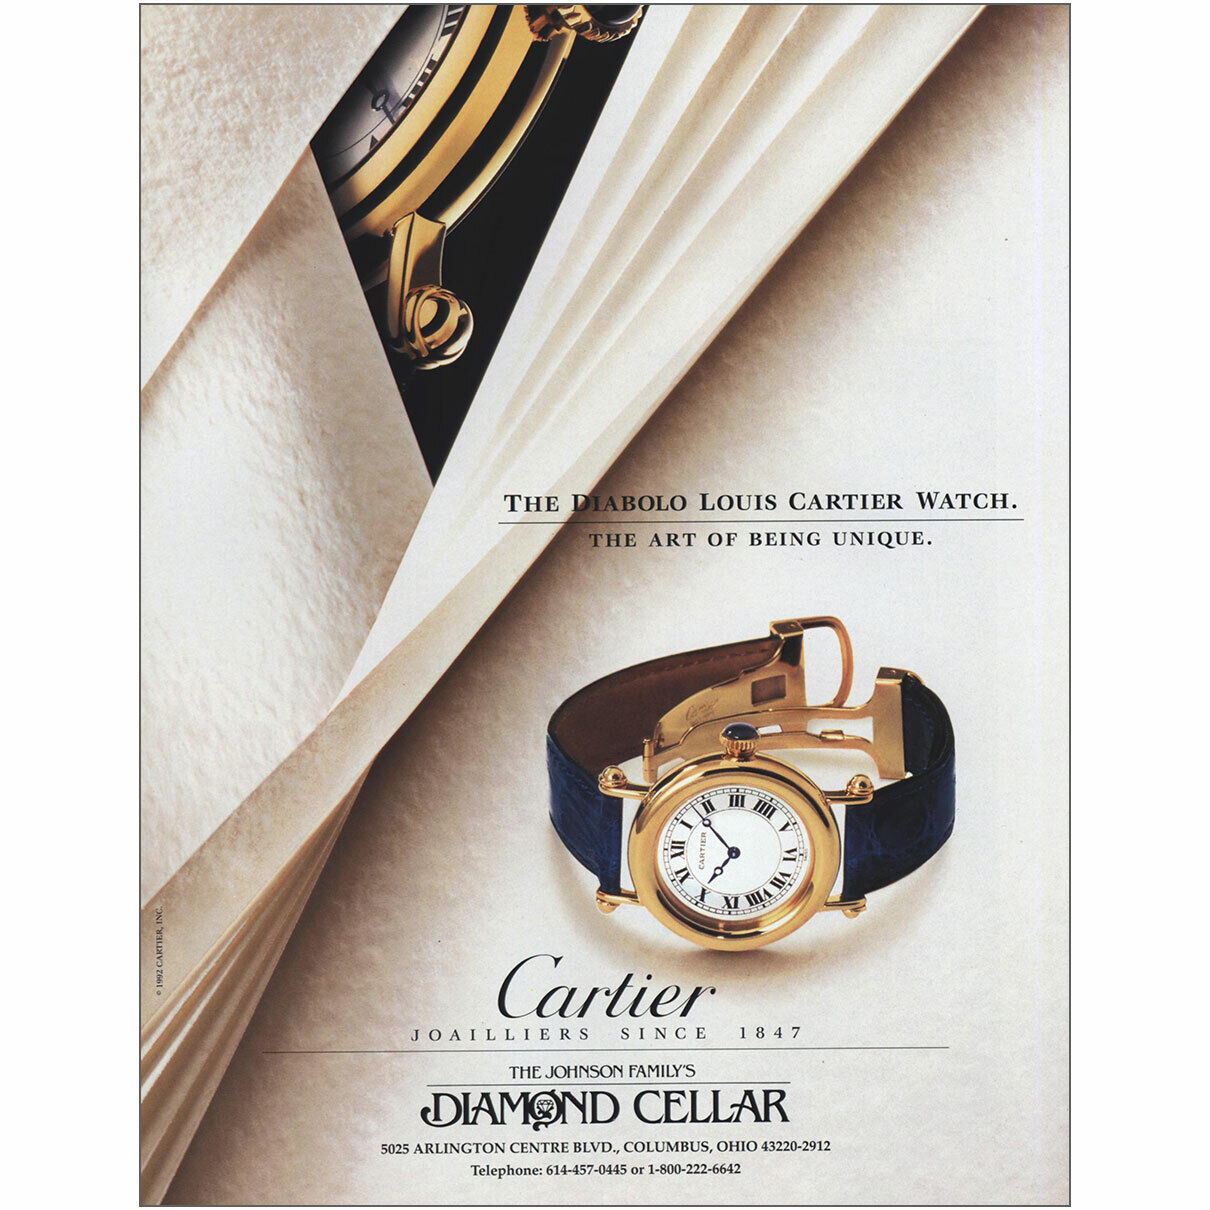 1993 Diabolo Louis Cartier Watch: Art of Being Unique Vintage Print Ad